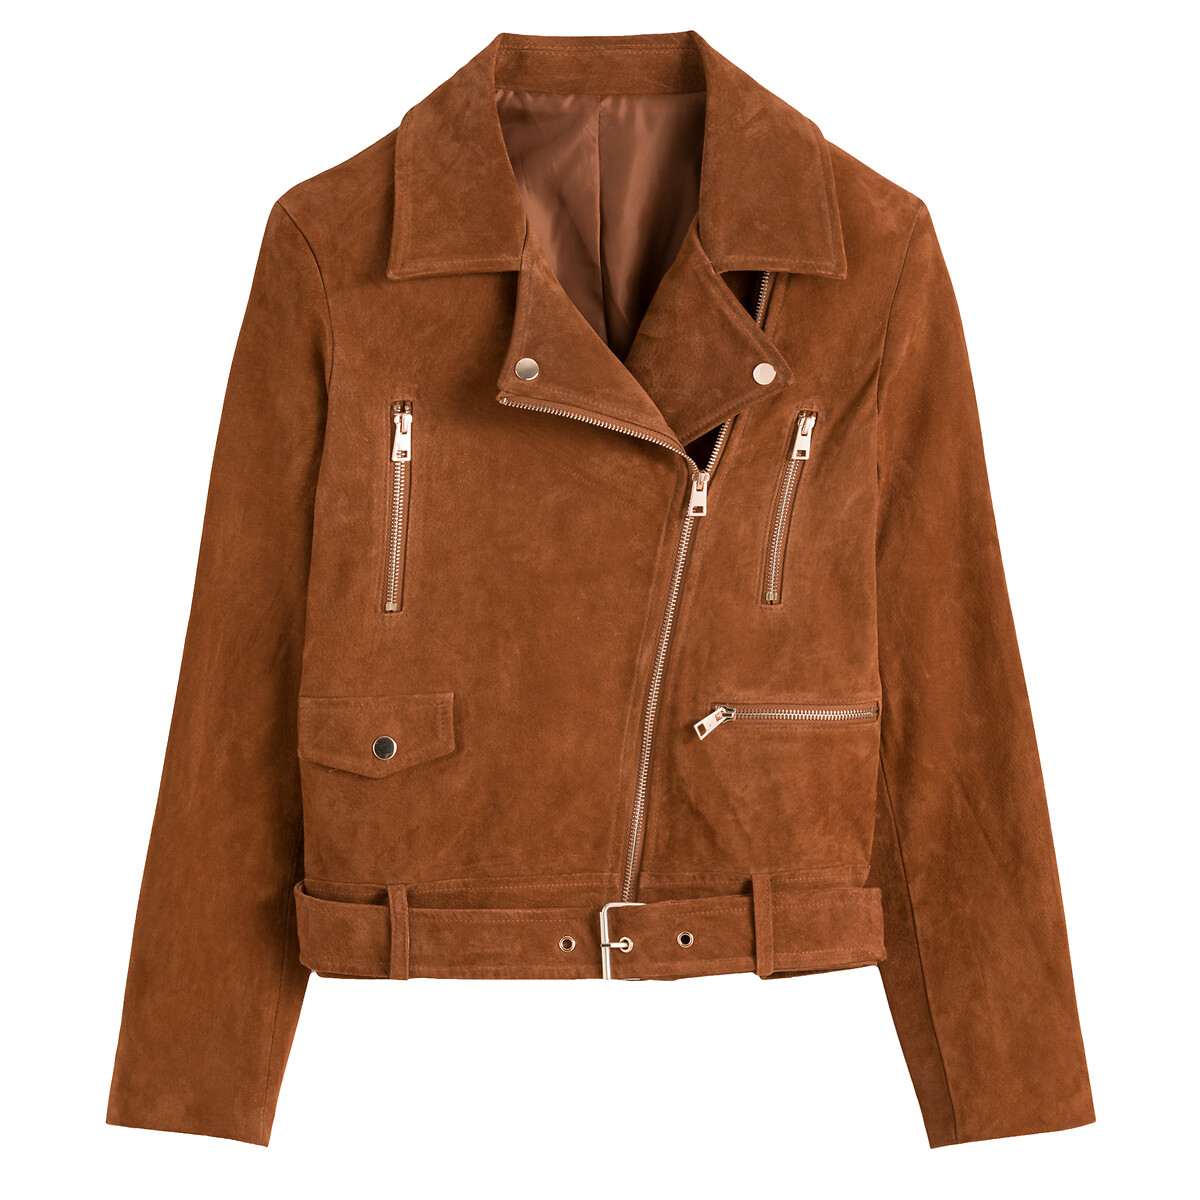 Куртка Из кожи в байкерском стиле 48 (FR) - 54 (RUS) каштановый LaRedoute, размер 48 (FR) - 54 (RUS) Куртка Из кожи в байкерском стиле 48 (FR) - 54 (RUS) каштановый - фото 5